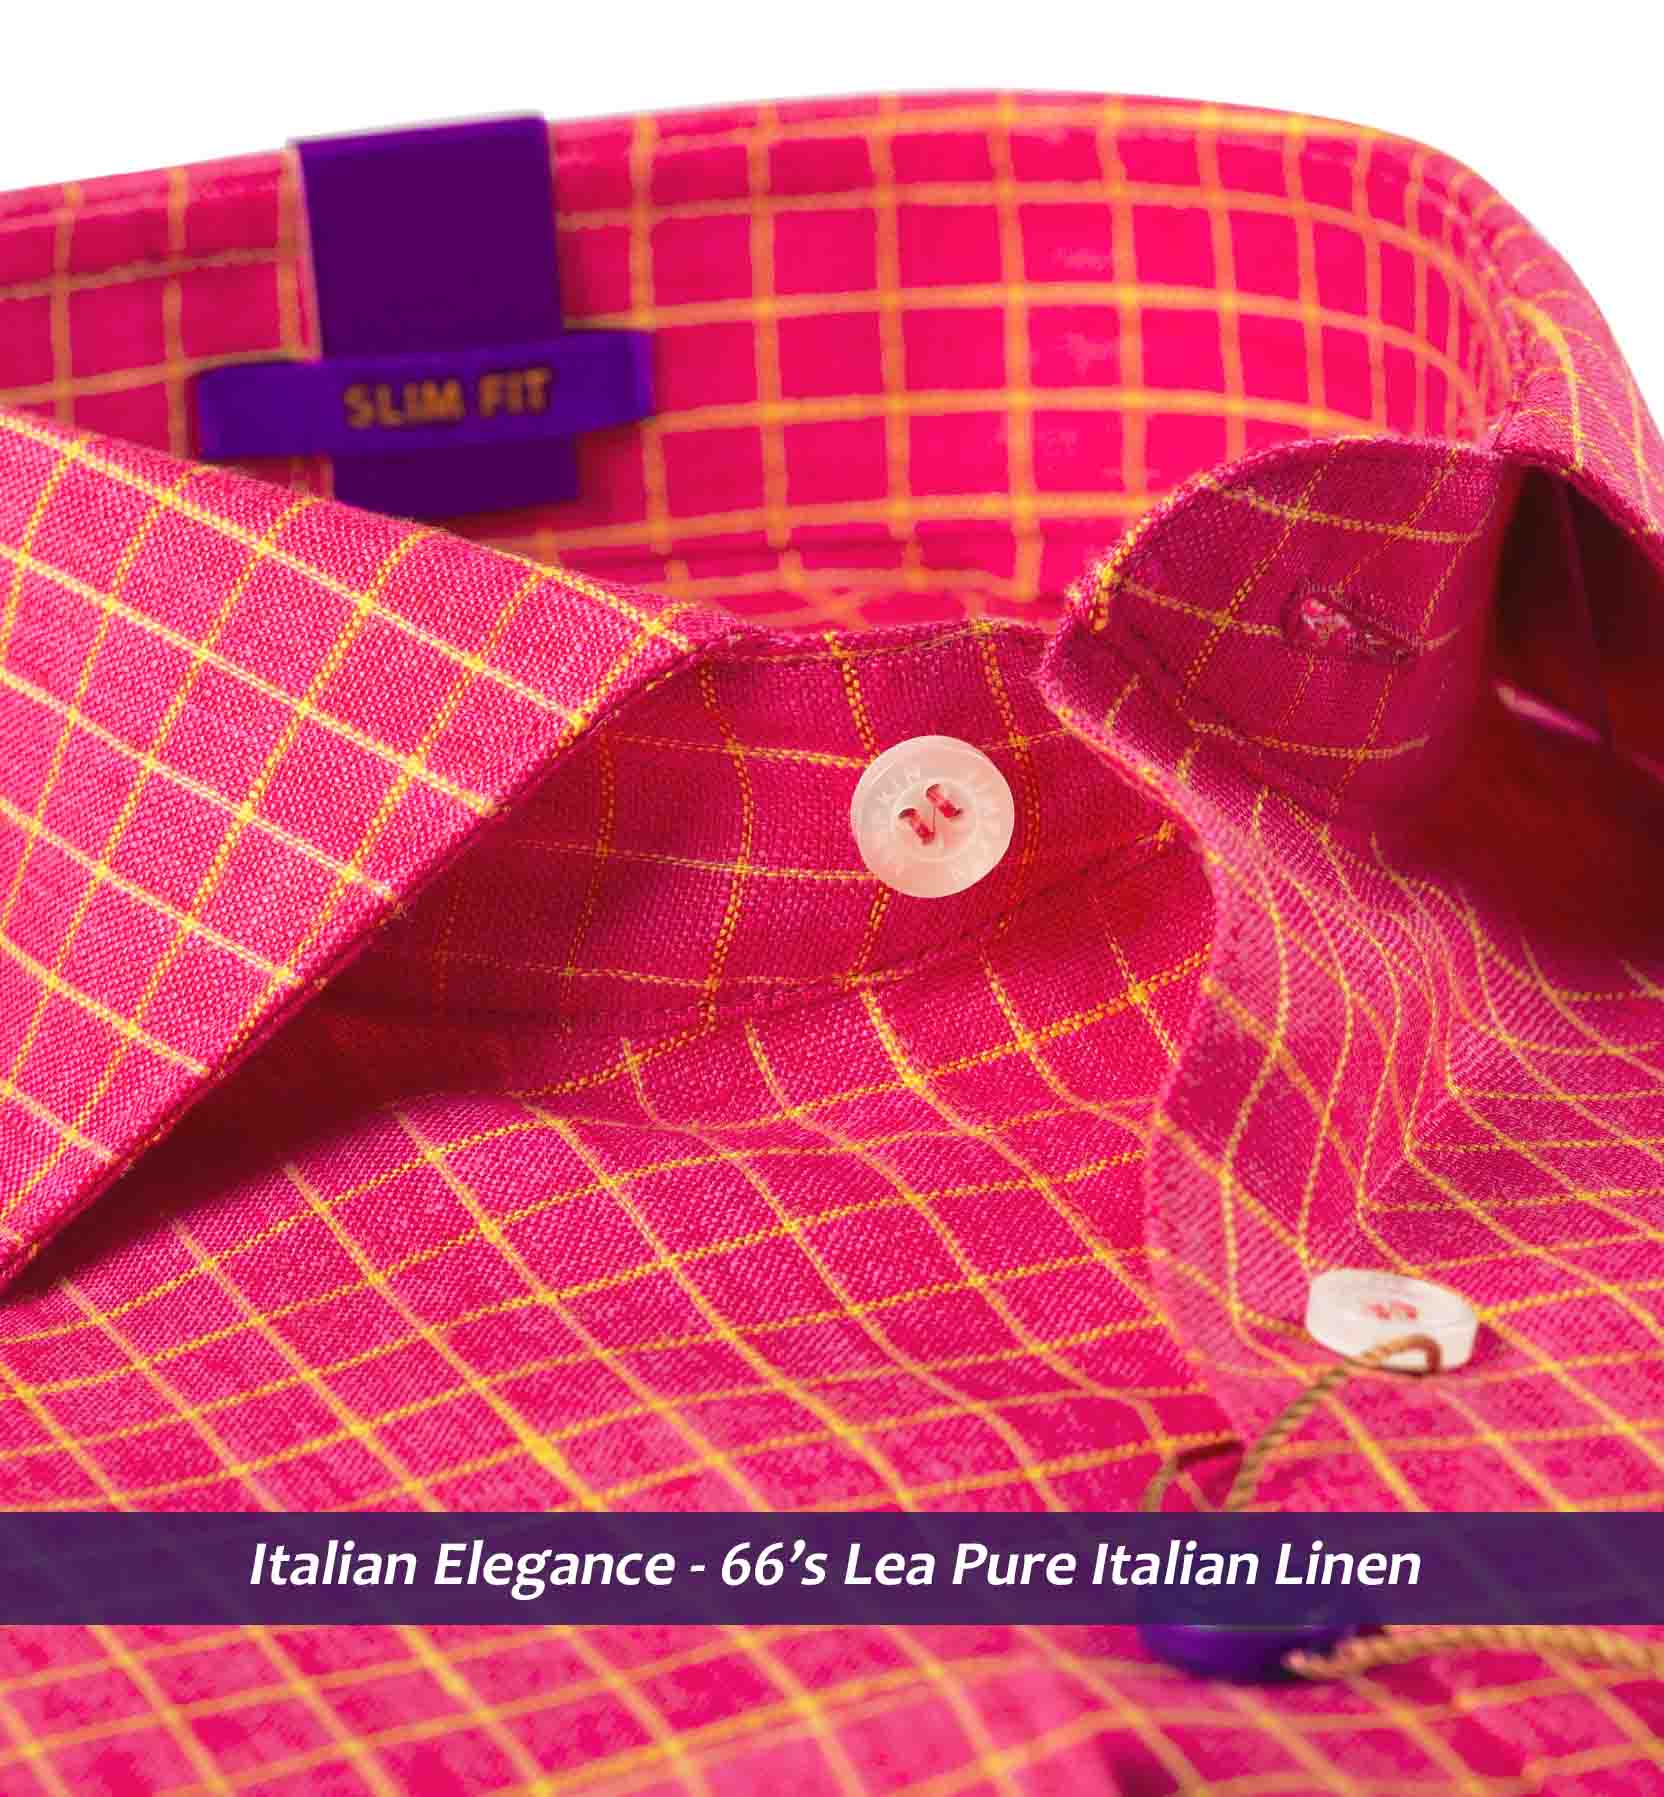 Obispo- Coral Red & Yellow Check- 66's Lea Pure Luxury Linen